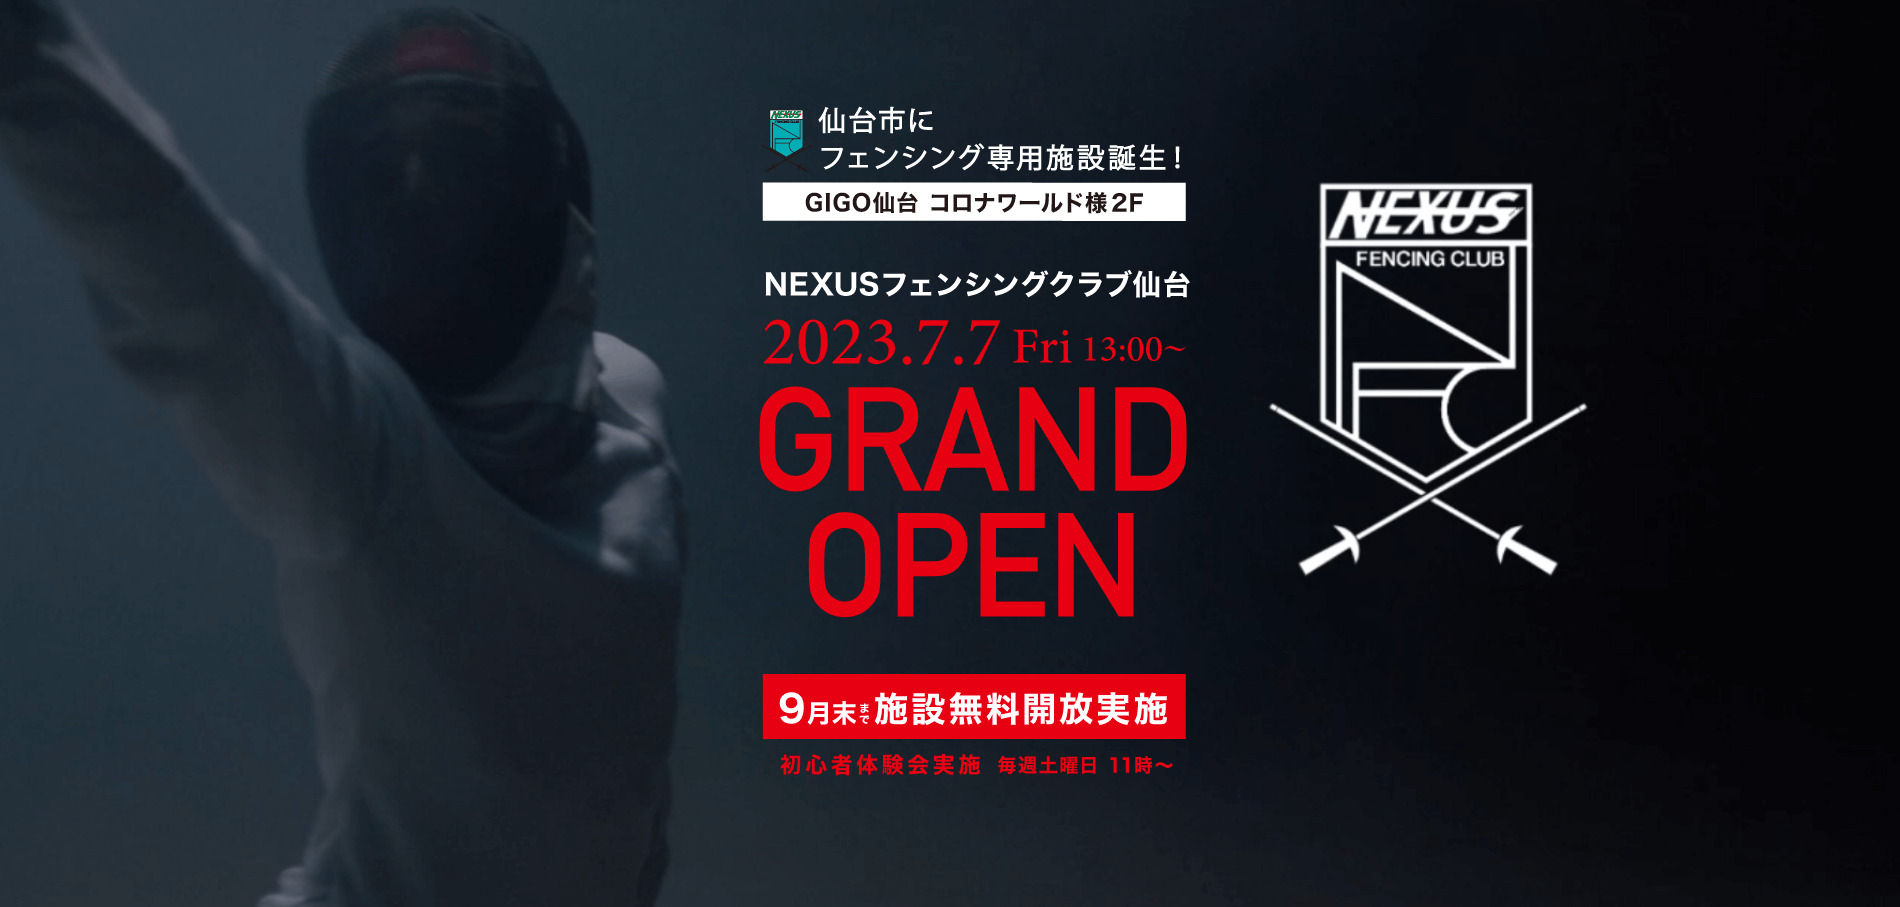 NEXUSフェンシング仙台ホームページを公開